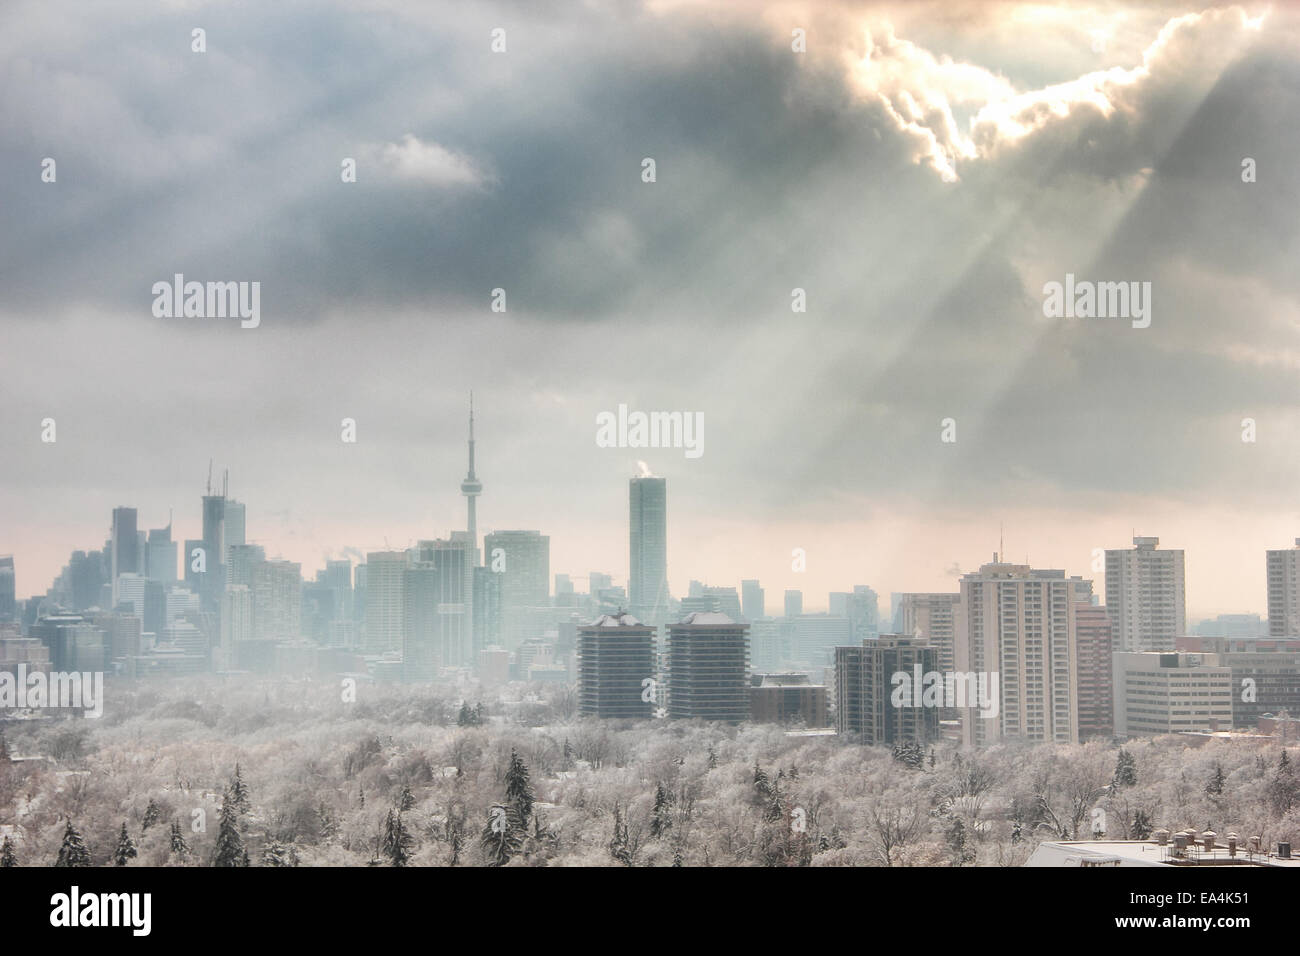 Le centre-ville de Toronto avec bâtiments obscurci par une tempête de neige, et d'avant-plan éclairé par des rayons crépusculaires de soleil. Banque D'Images